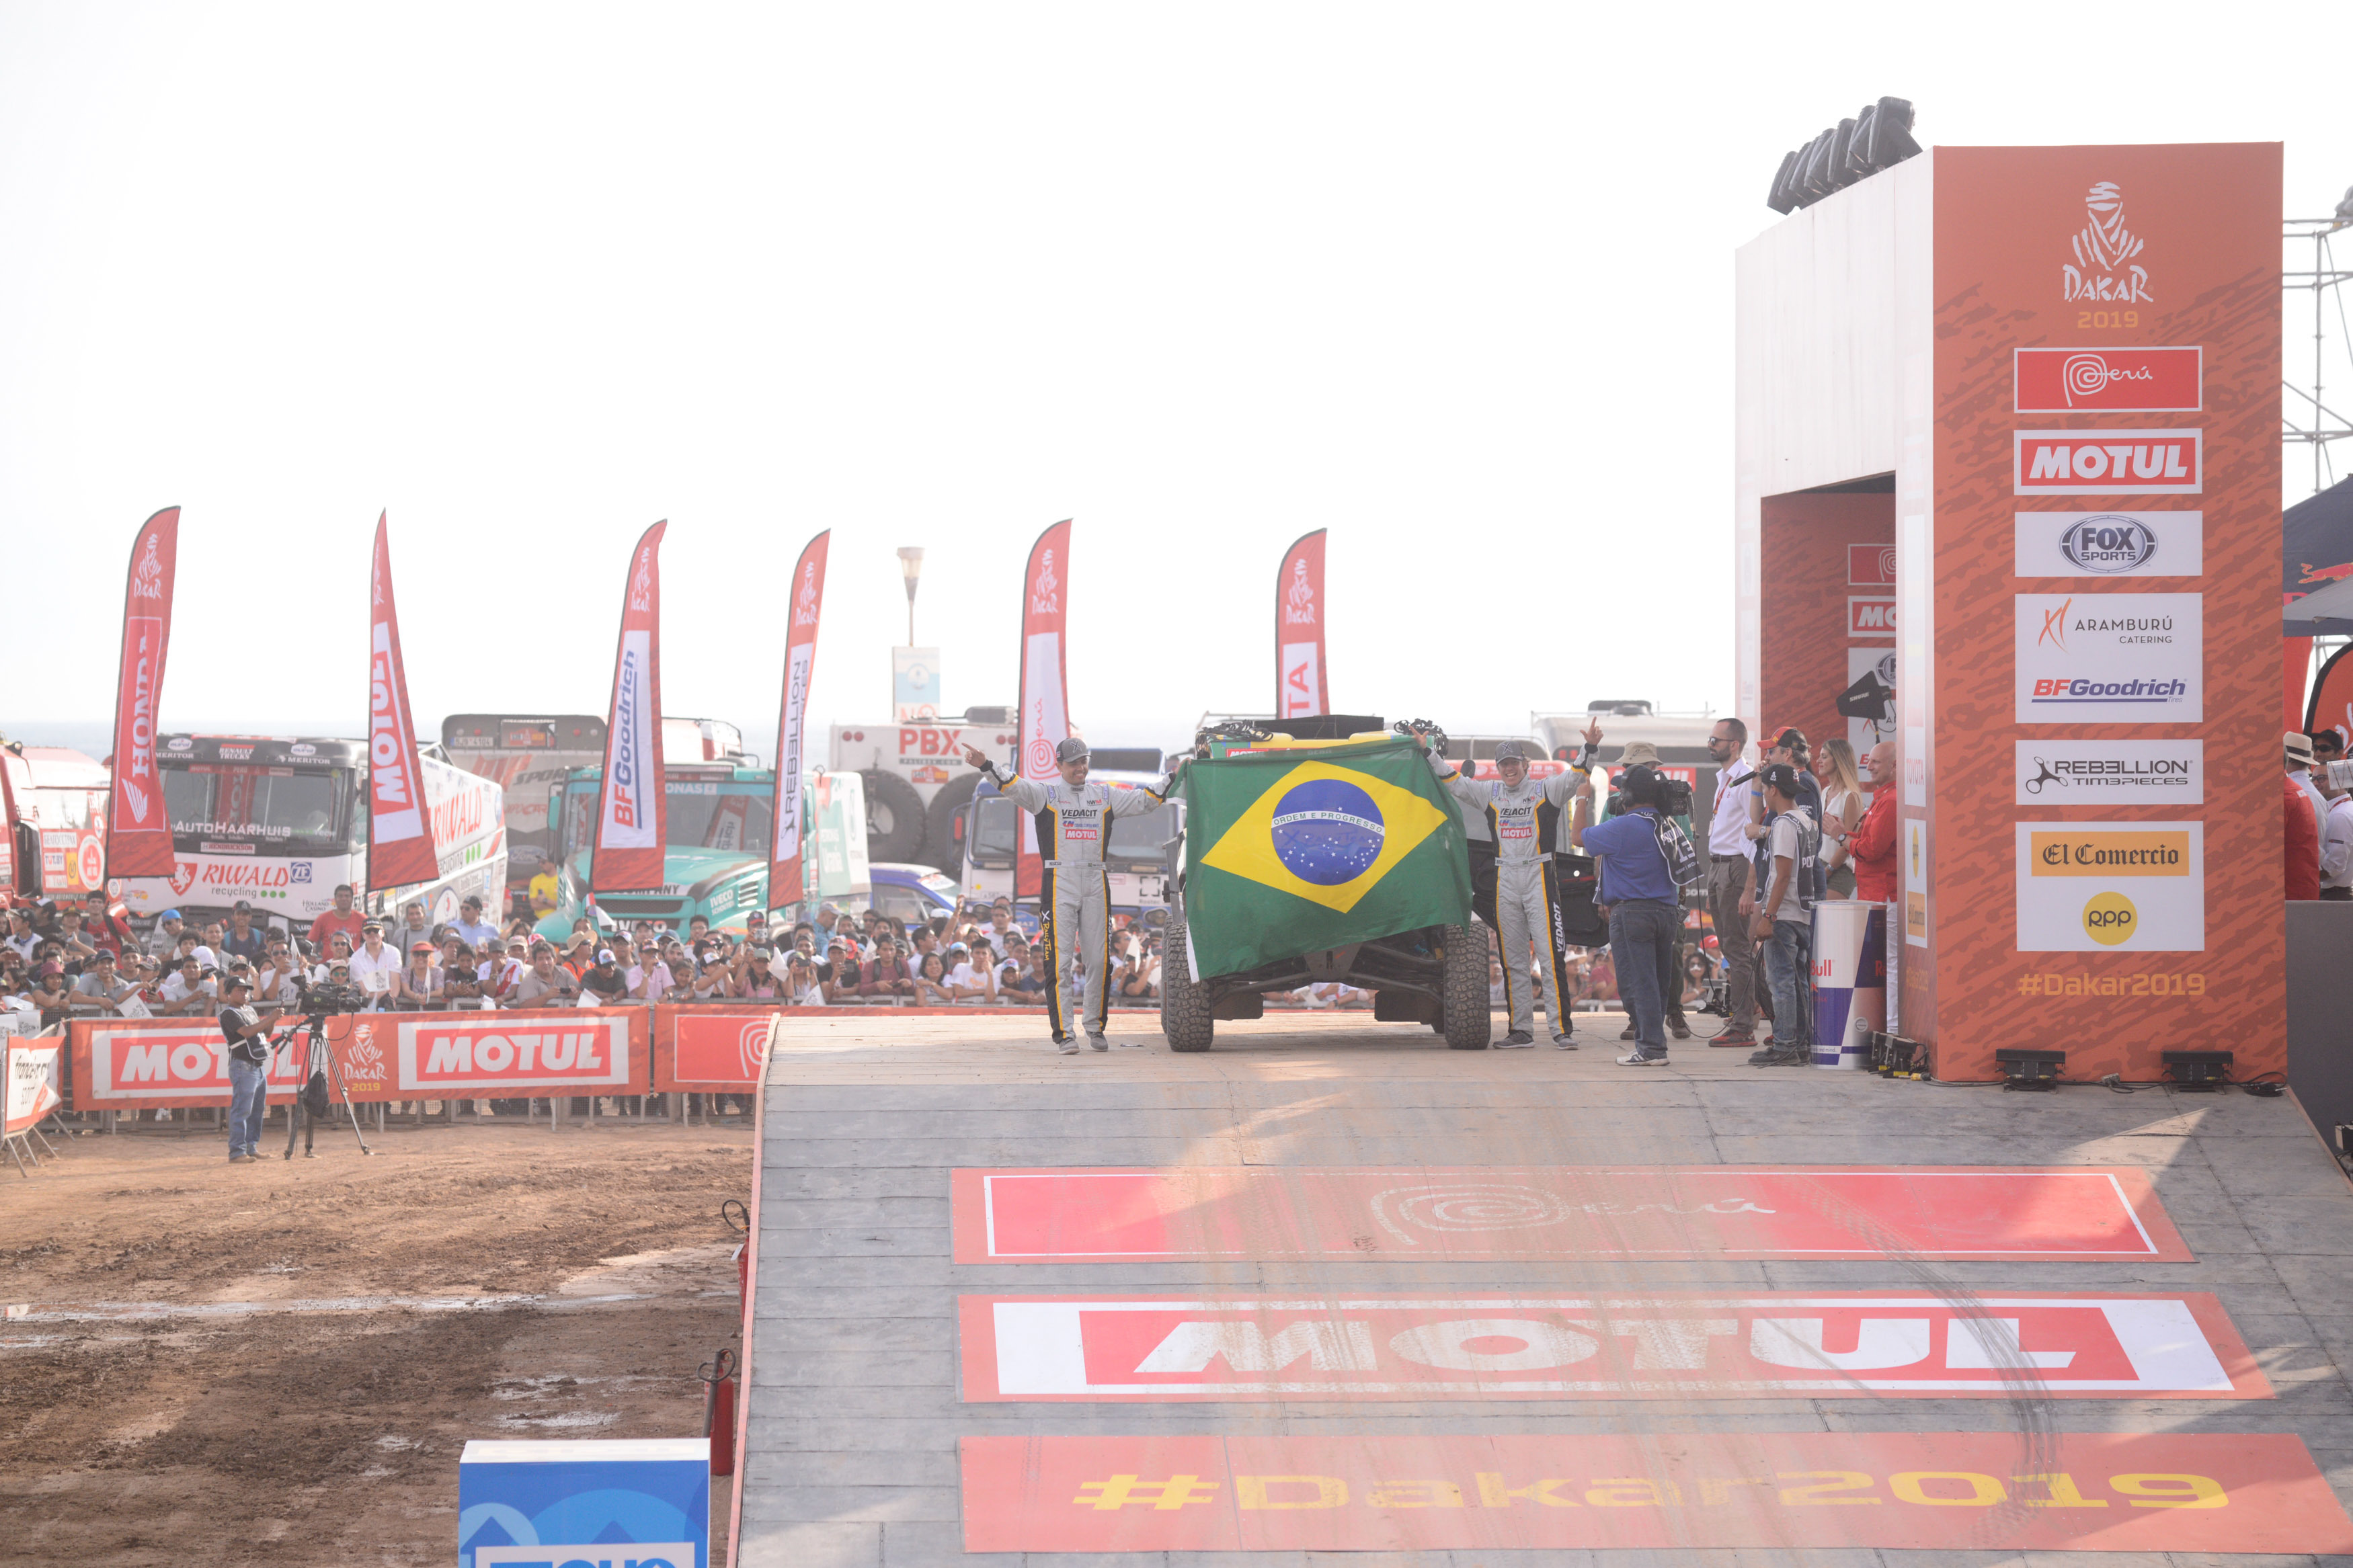 Comea o Dakar. Equipe brasileira encara primeiro dia como aquecimento e v espao para melhoras